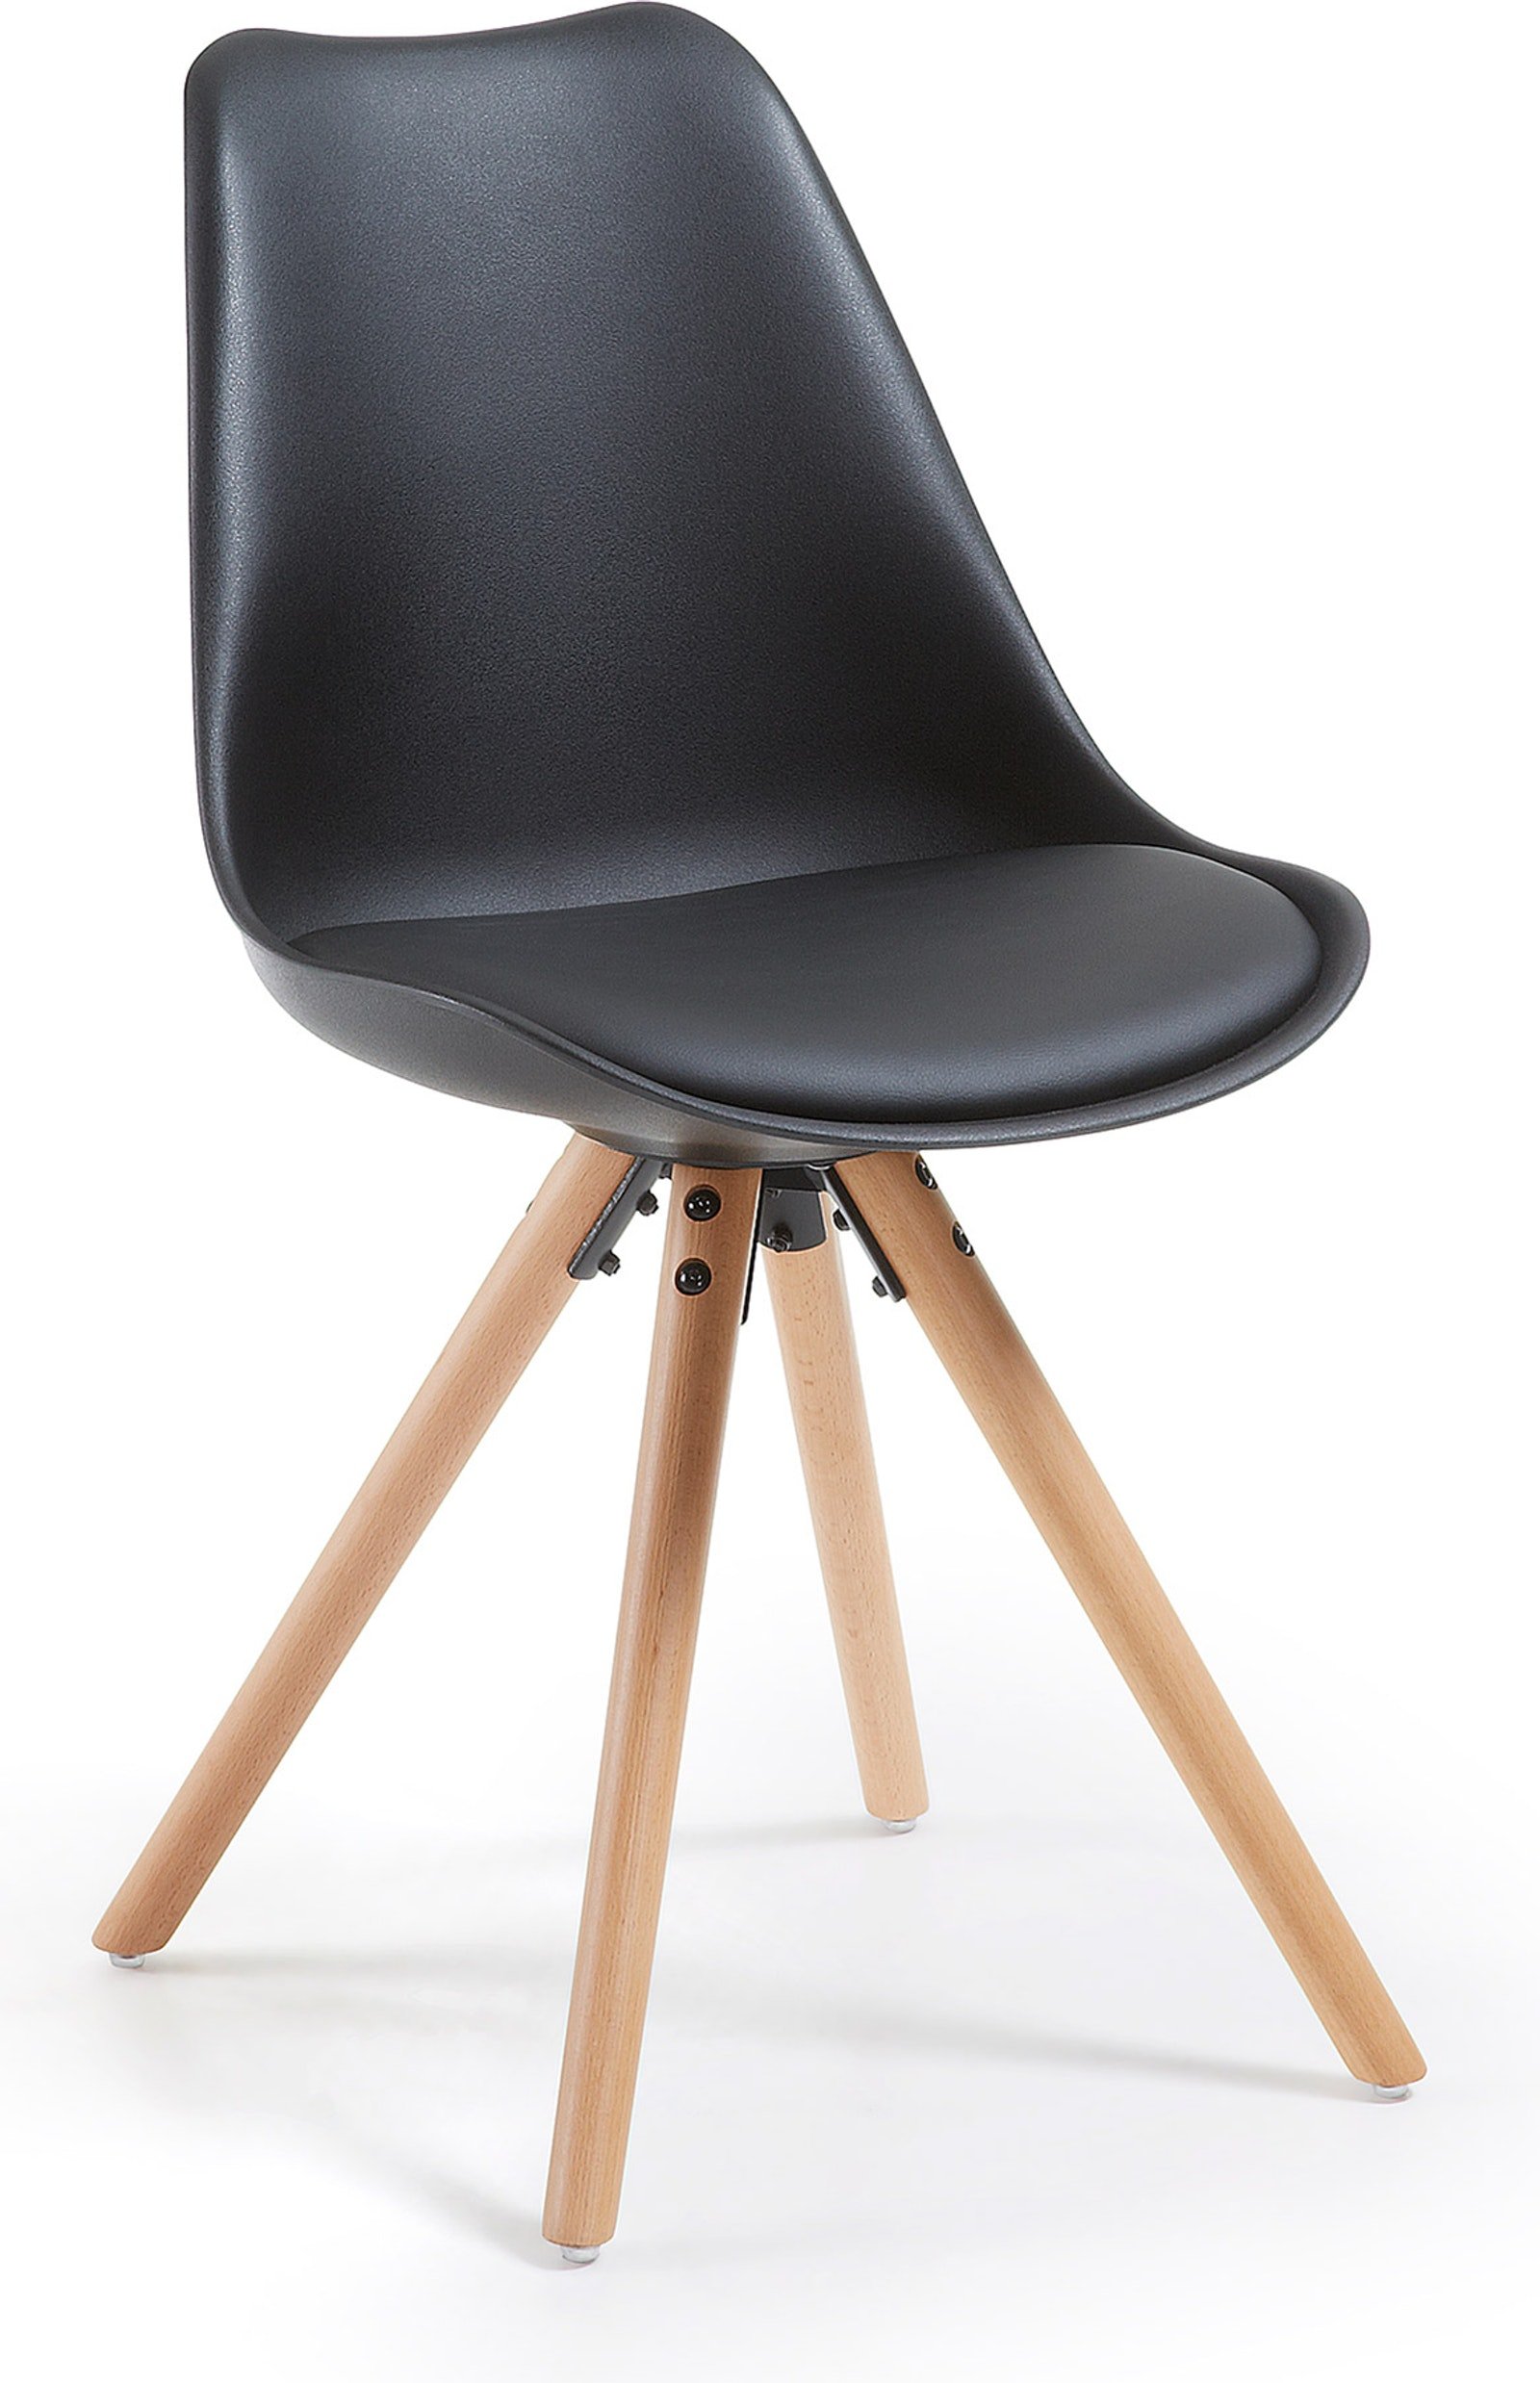 Ralf, Spisebordsstol med træben, nordisk, moderne, plast by LaForma (H: 81.5 cm. B: 48 cm. L: 56 cm., Sort/Natur)